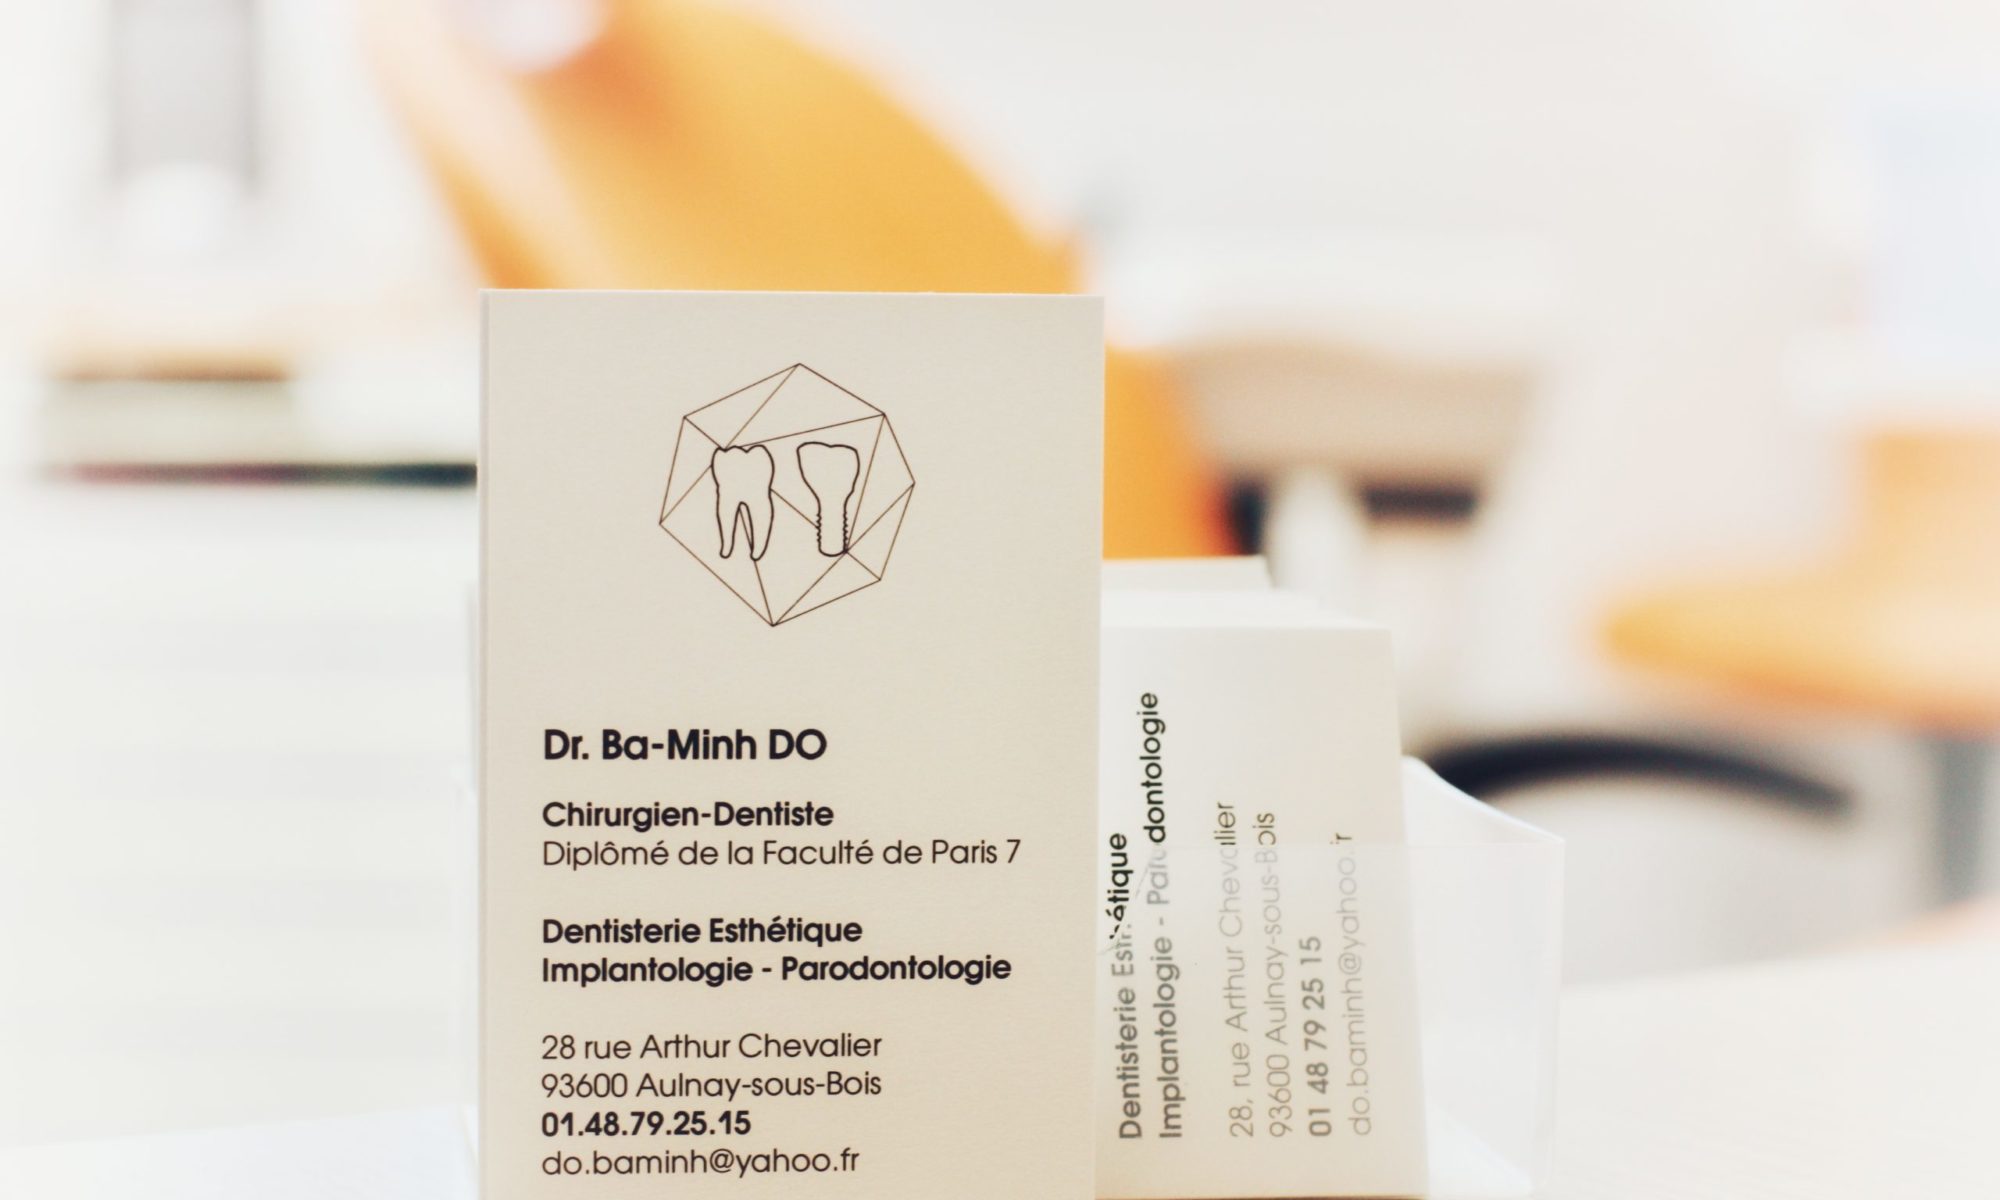 Dr Ba-Minh DO